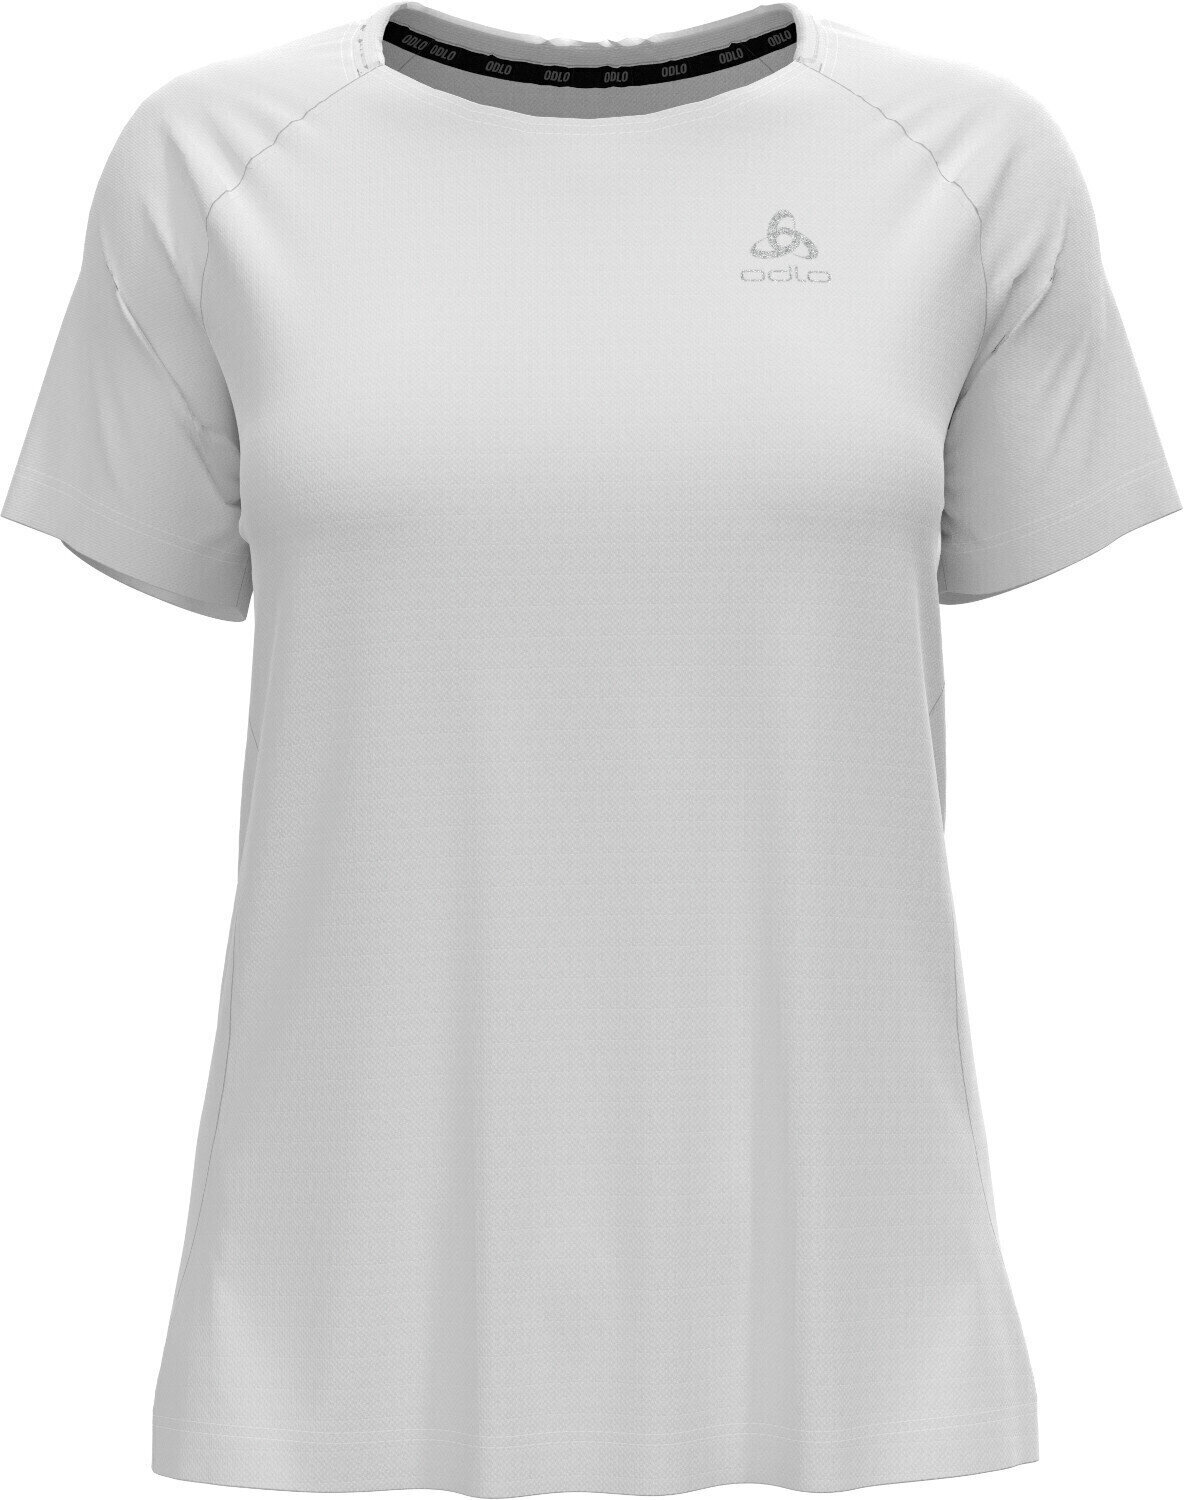 Bežecké tričko s krátkym rukávom
 Odlo Essential T-Shirt White S Bežecké tričko s krátkym rukávom